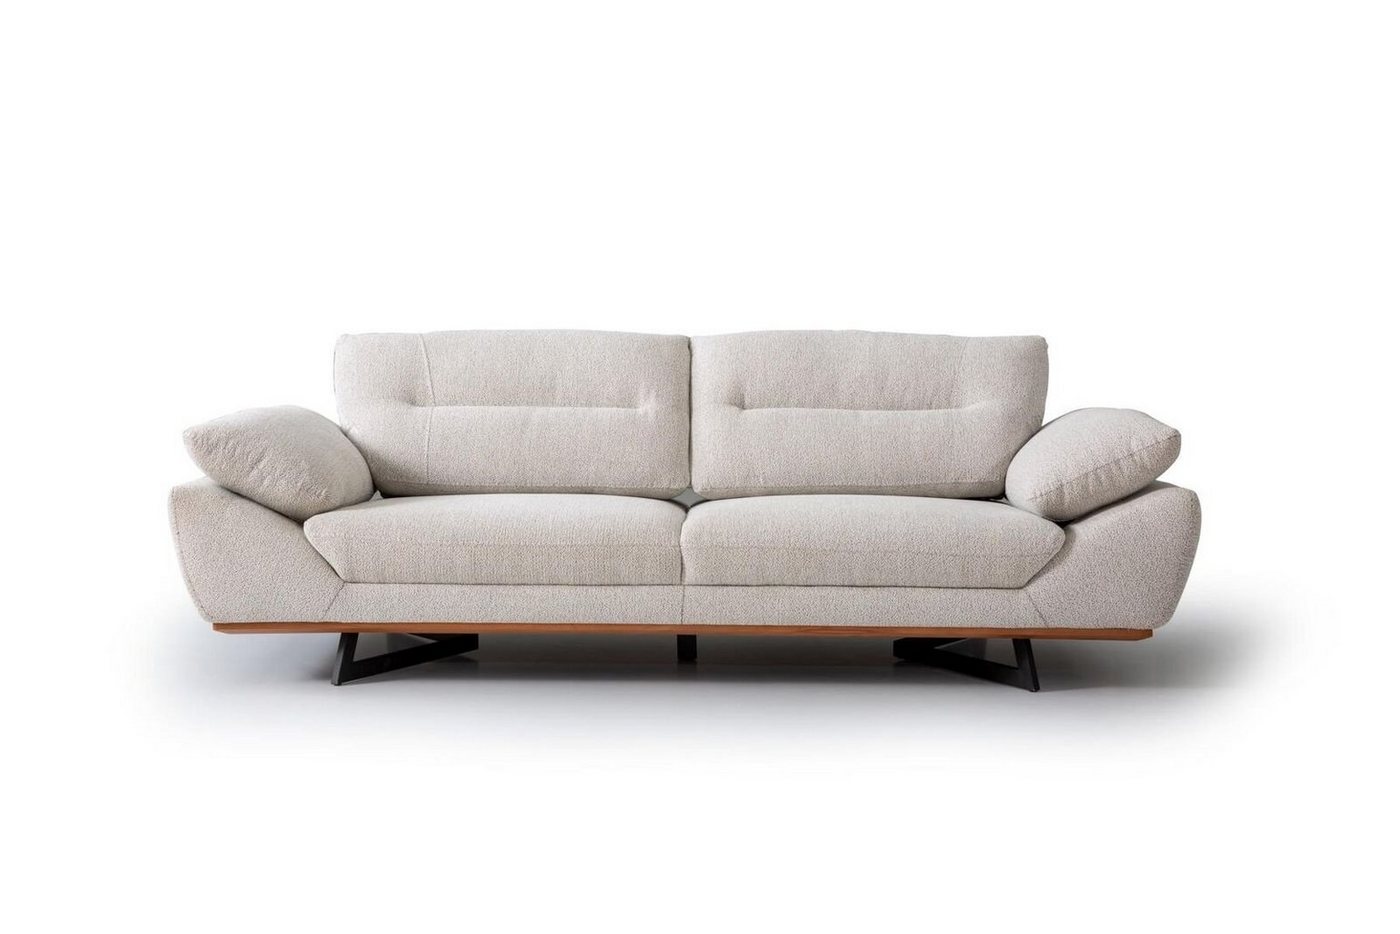 JVmoebel 3-Sitzer Designer Sofa 3 Sitzer Couch Polster Sofas Design Weiß in wohnzimmer, 1 Teile, Made in Europa von JVmoebel